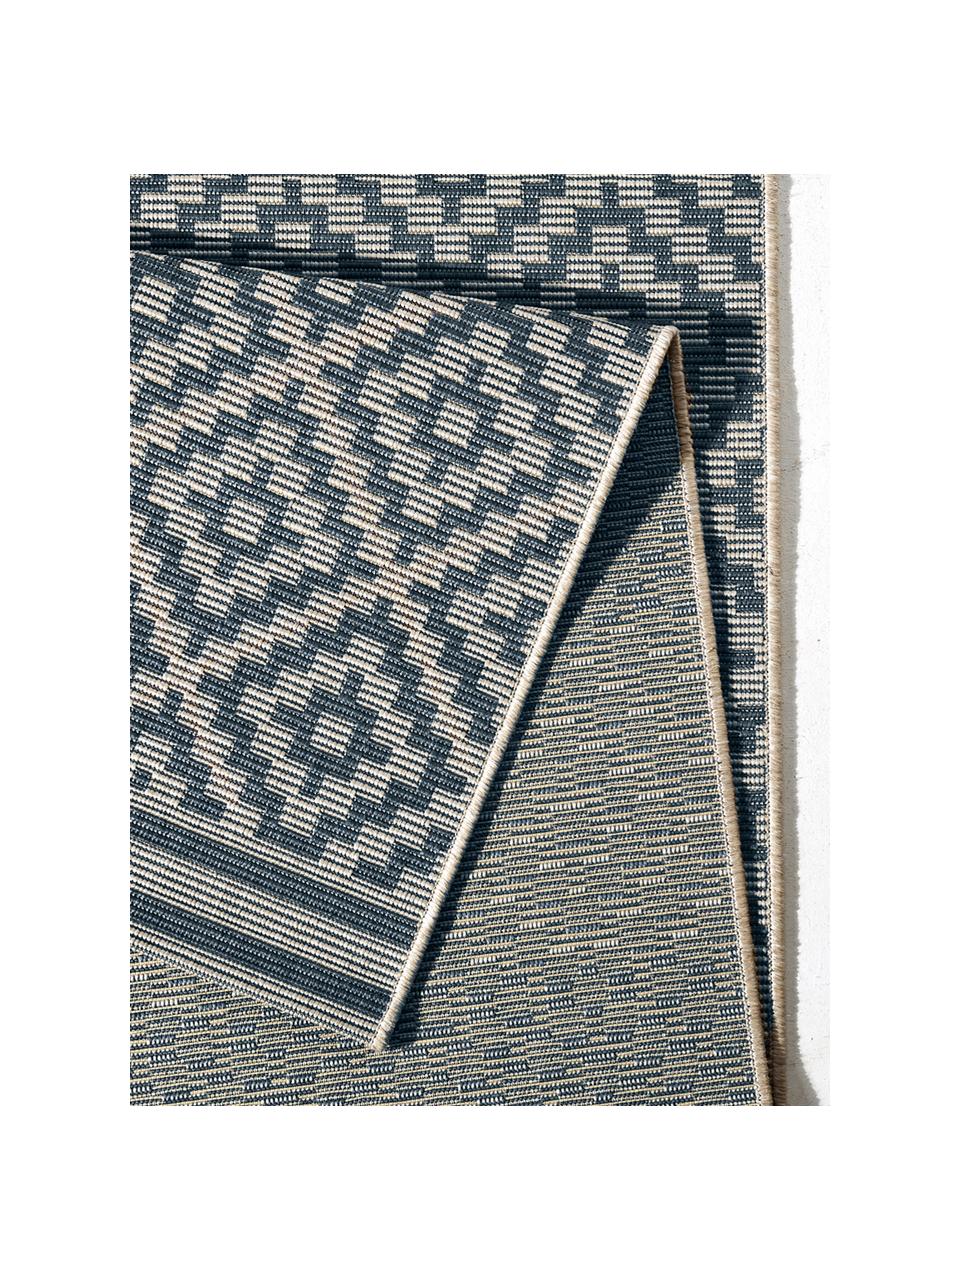 Passatoia da interno-esterno Meadow Raute, Blu, crema, Larg. 80 x Lung. 200 cm